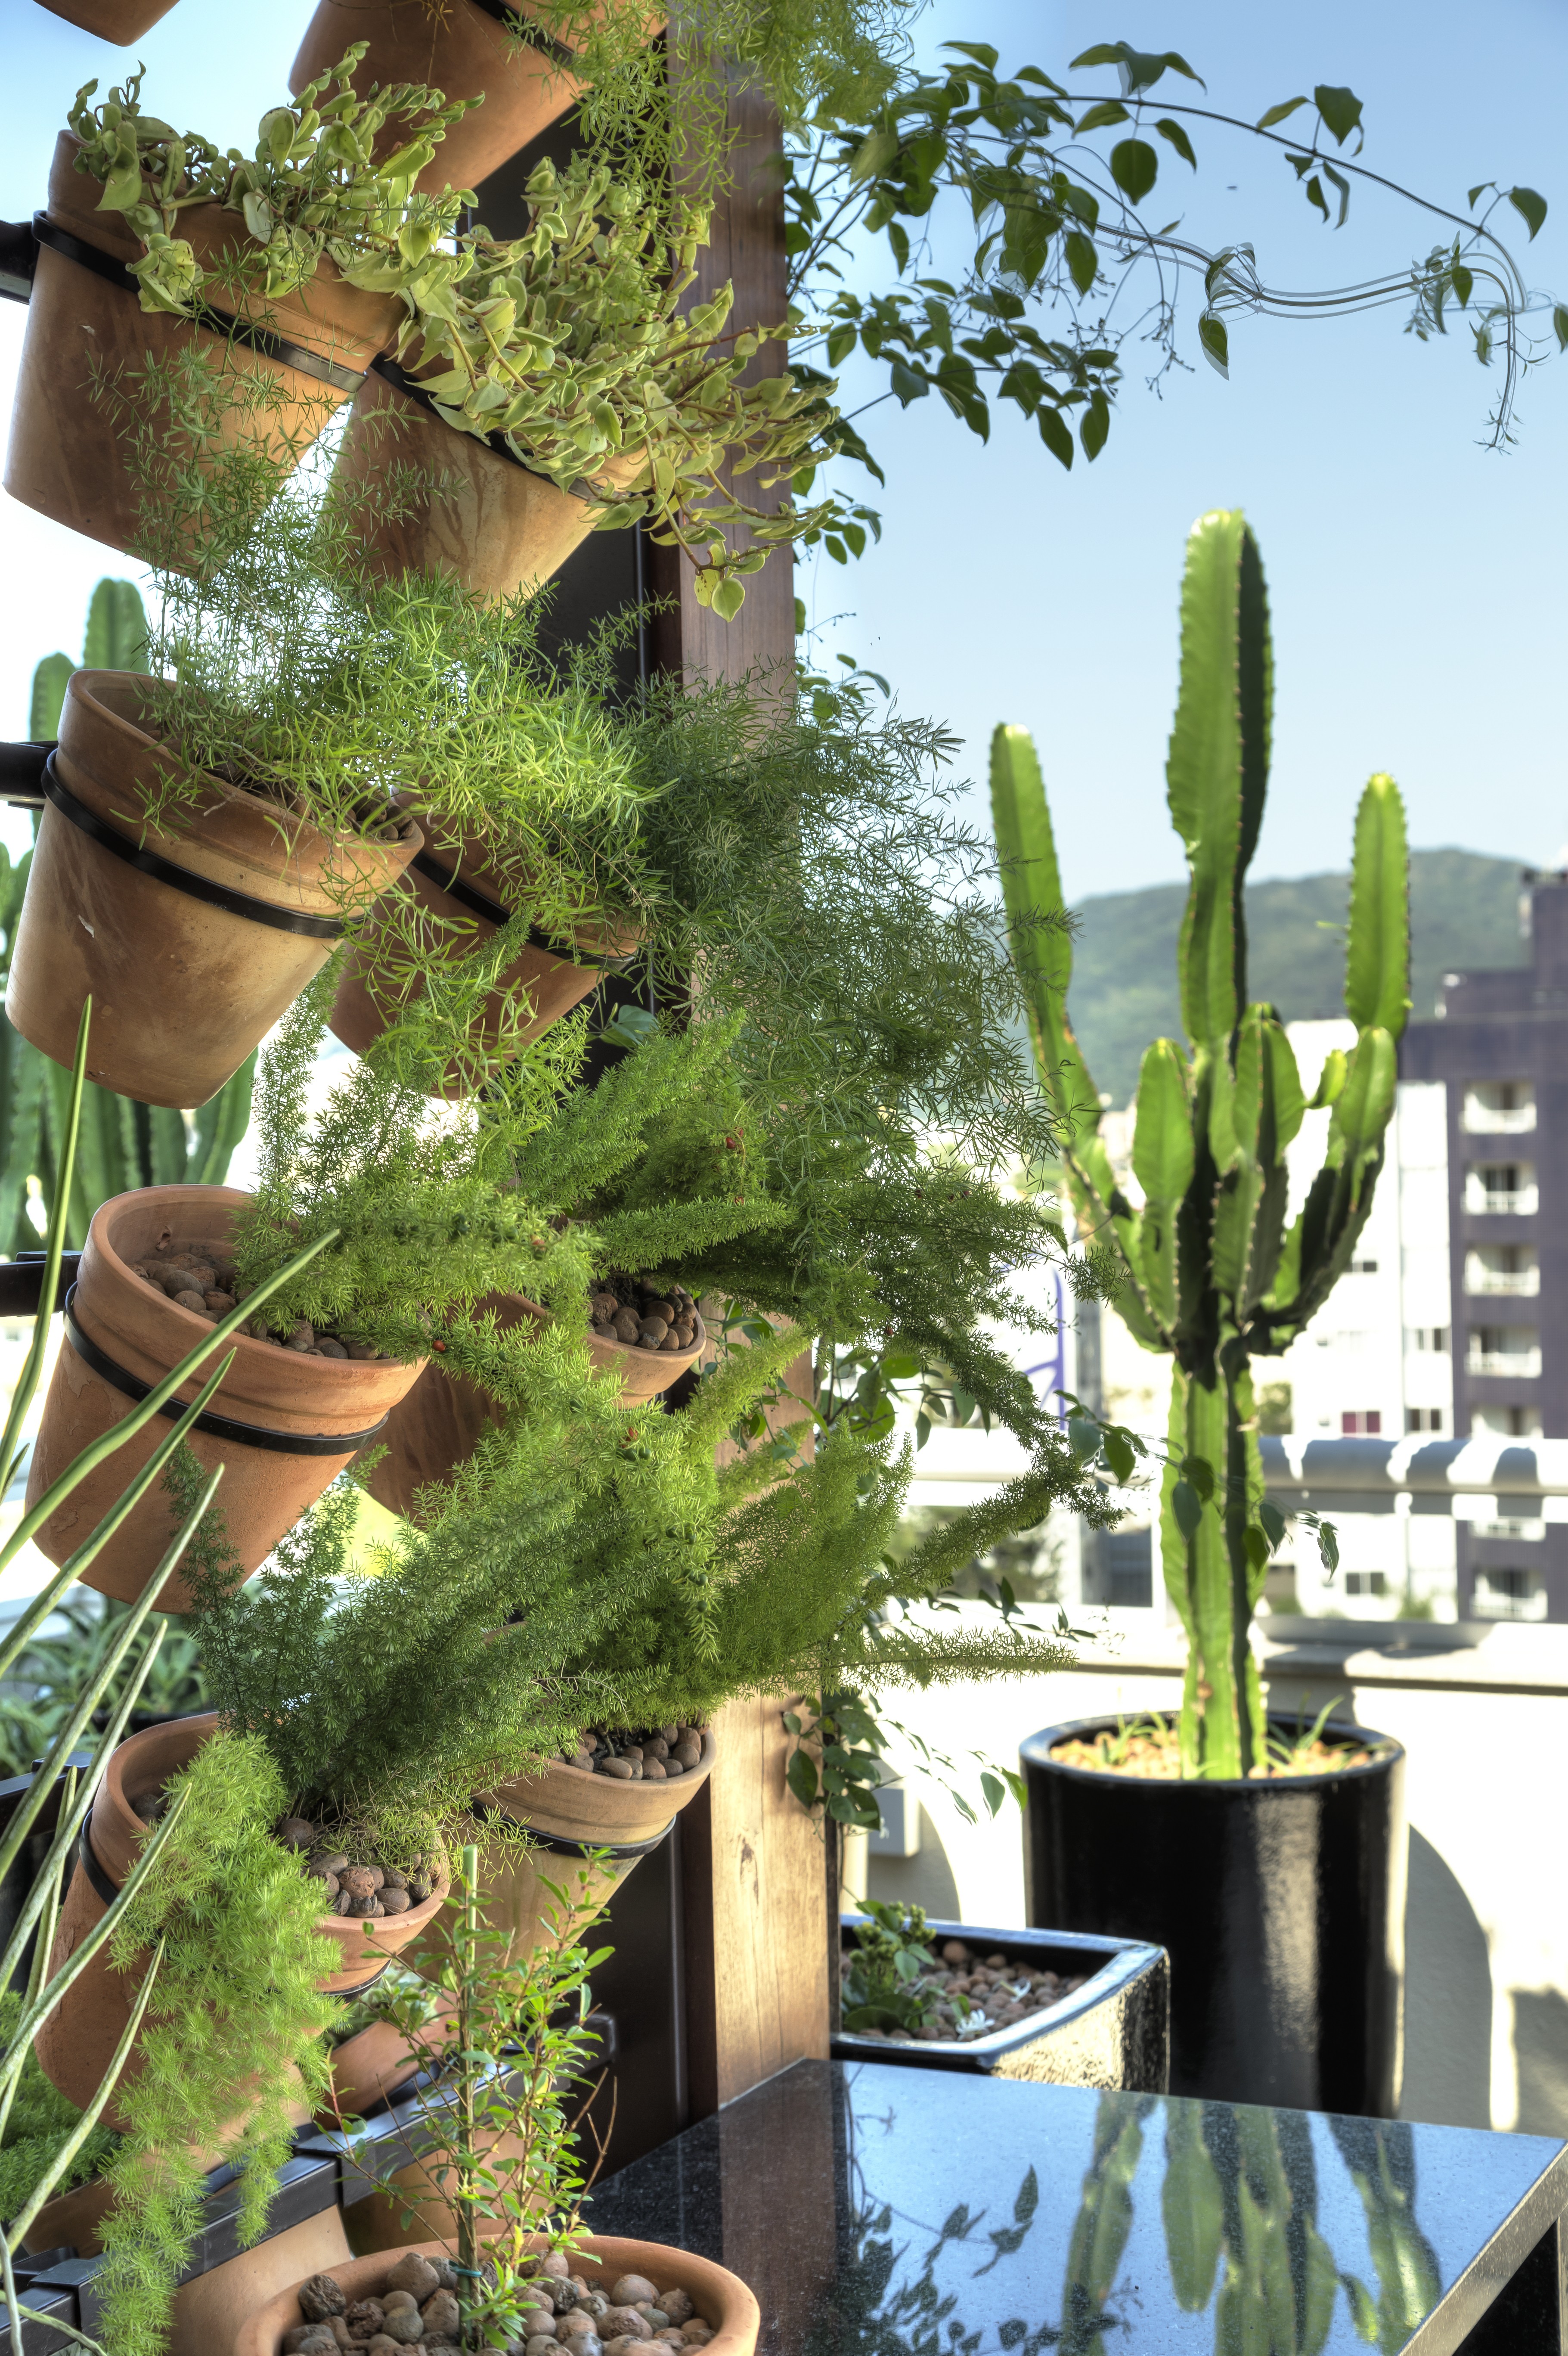 Varanda-jardim-vertical-ideias-dicas-projeto-paisagismo-plantas-decoração (Foto: Mariana Boro/Divulgação)